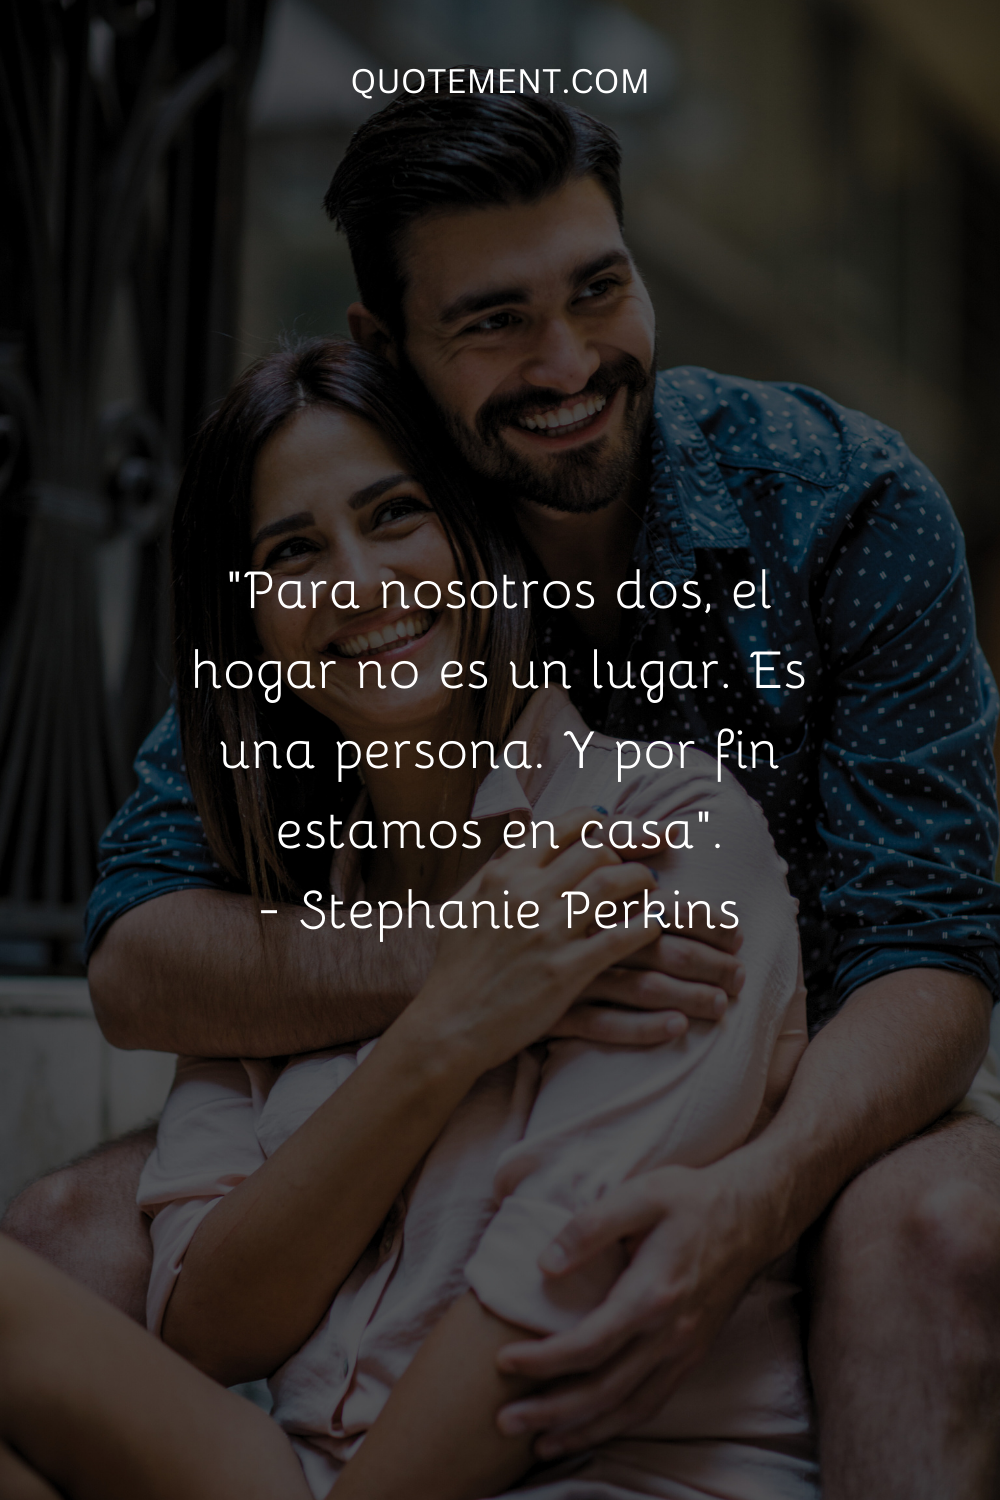 "Para nosotros dos, el hogar no es un lugar. Es una persona. Y por fin estamos en casa". - Stephanie Perkins